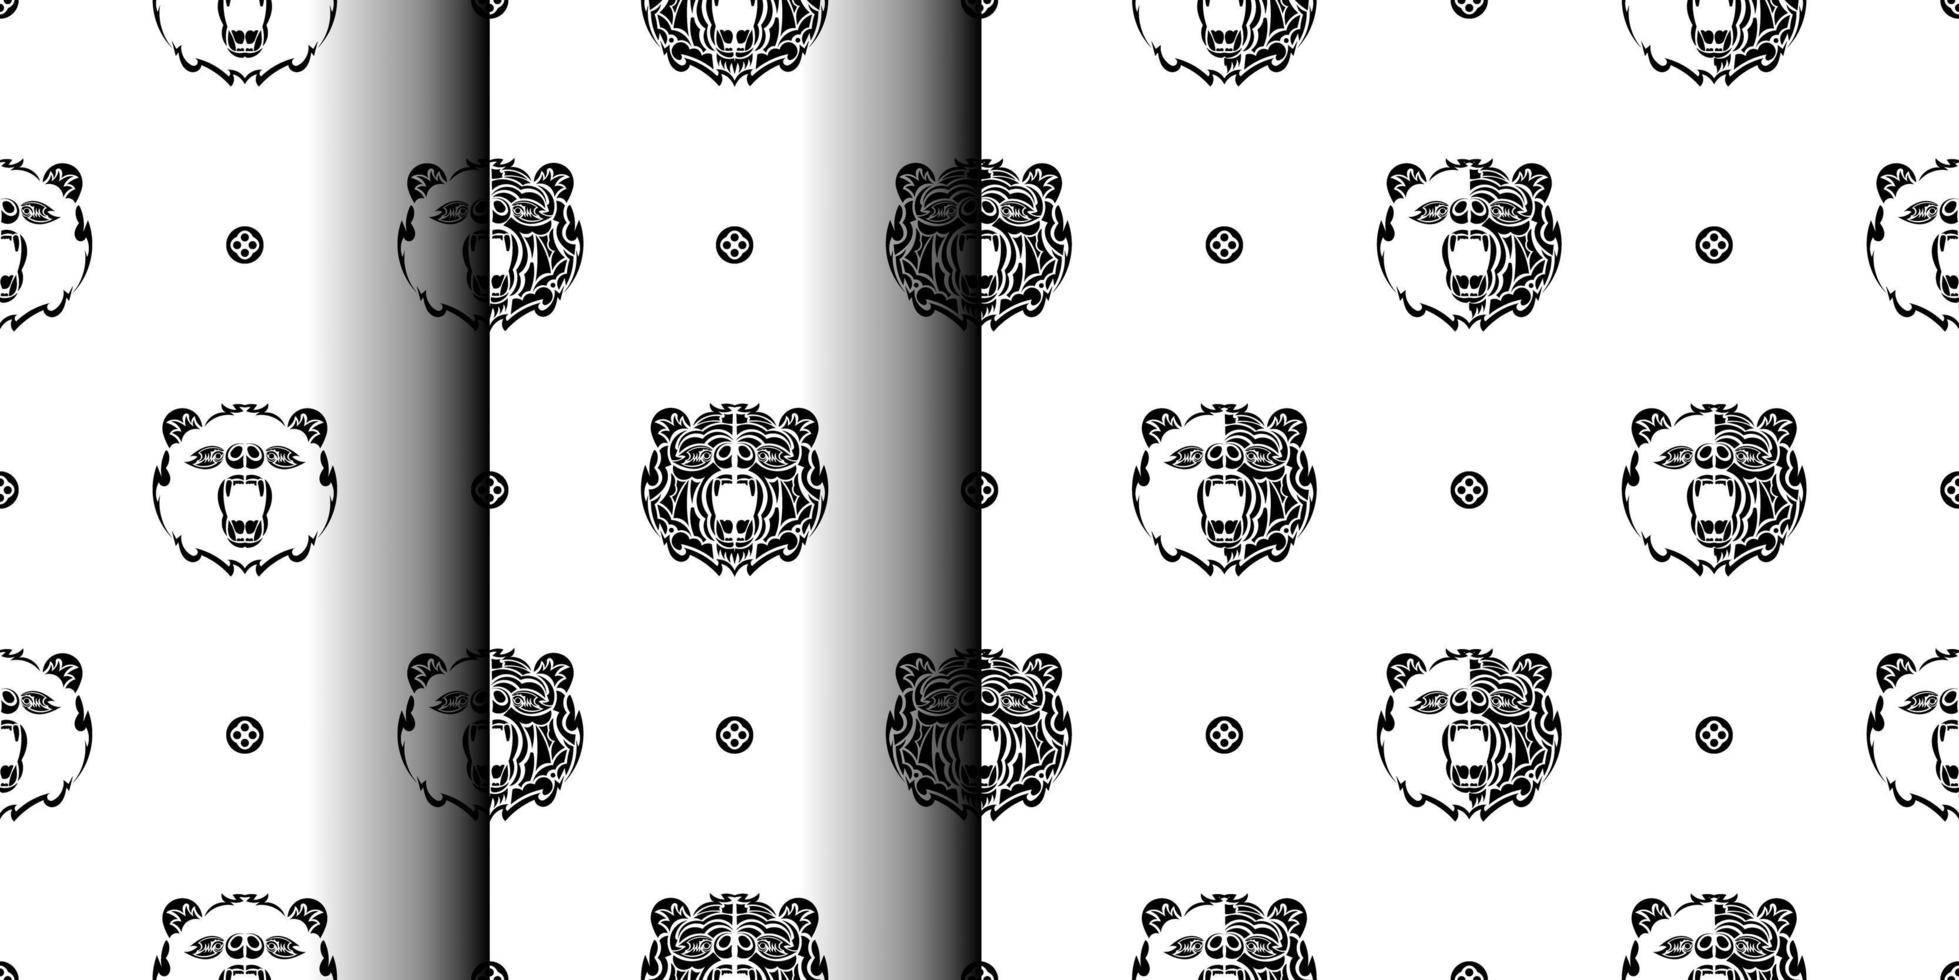 uppsättning av svart-vita sömlösa mönster med björn ansikte. bra för bakgrunder, tryck, kläder och textilier. vektor